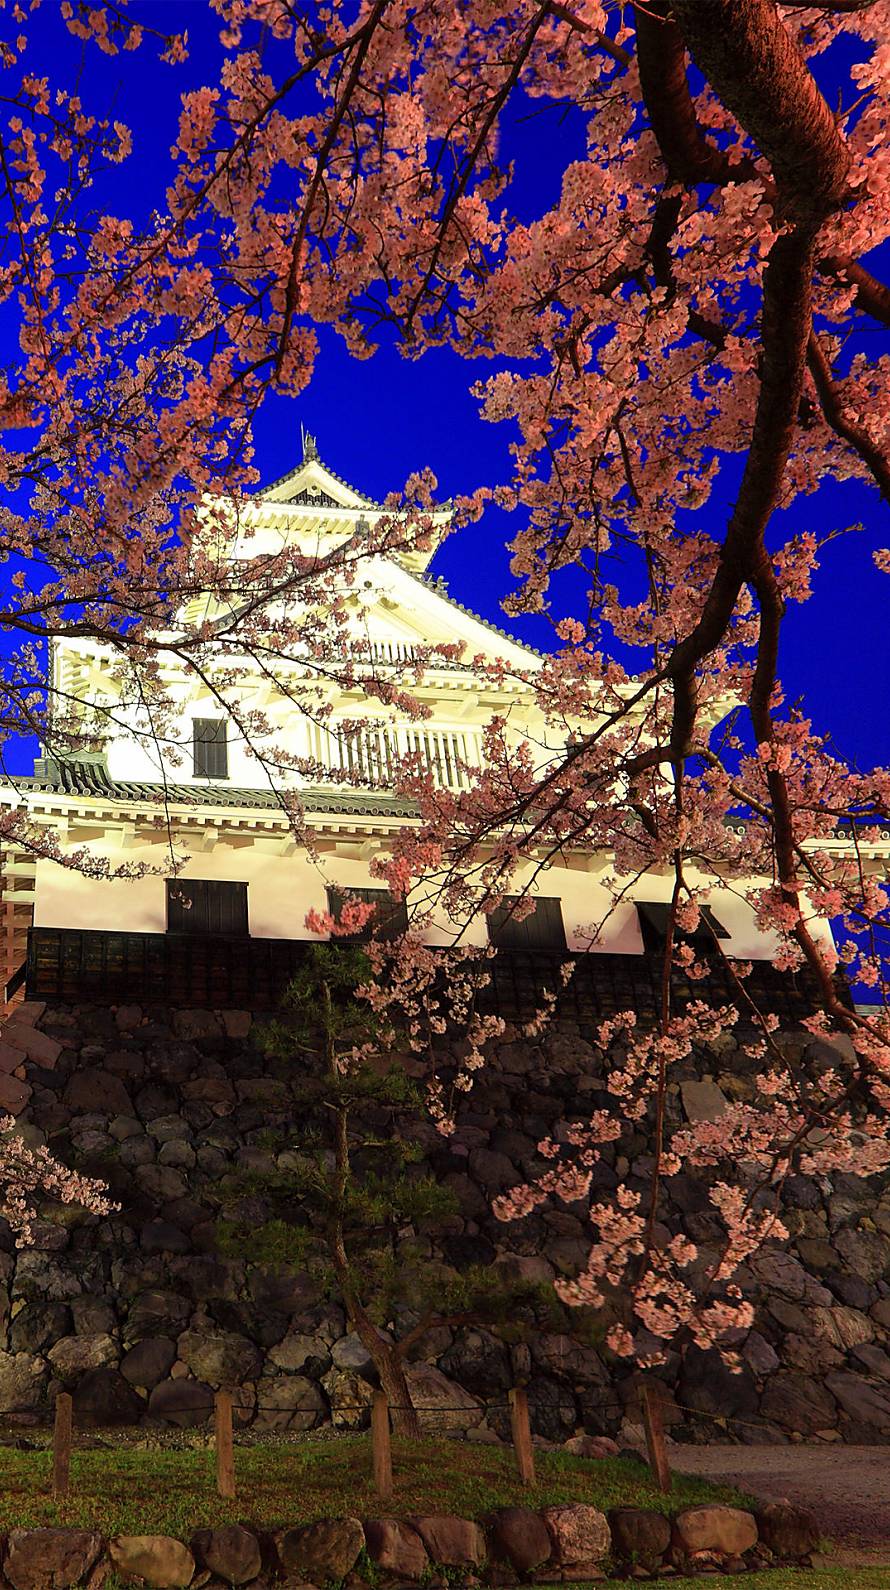 夜桜と天守閣 Iphone6壁紙 Wallpaperbox